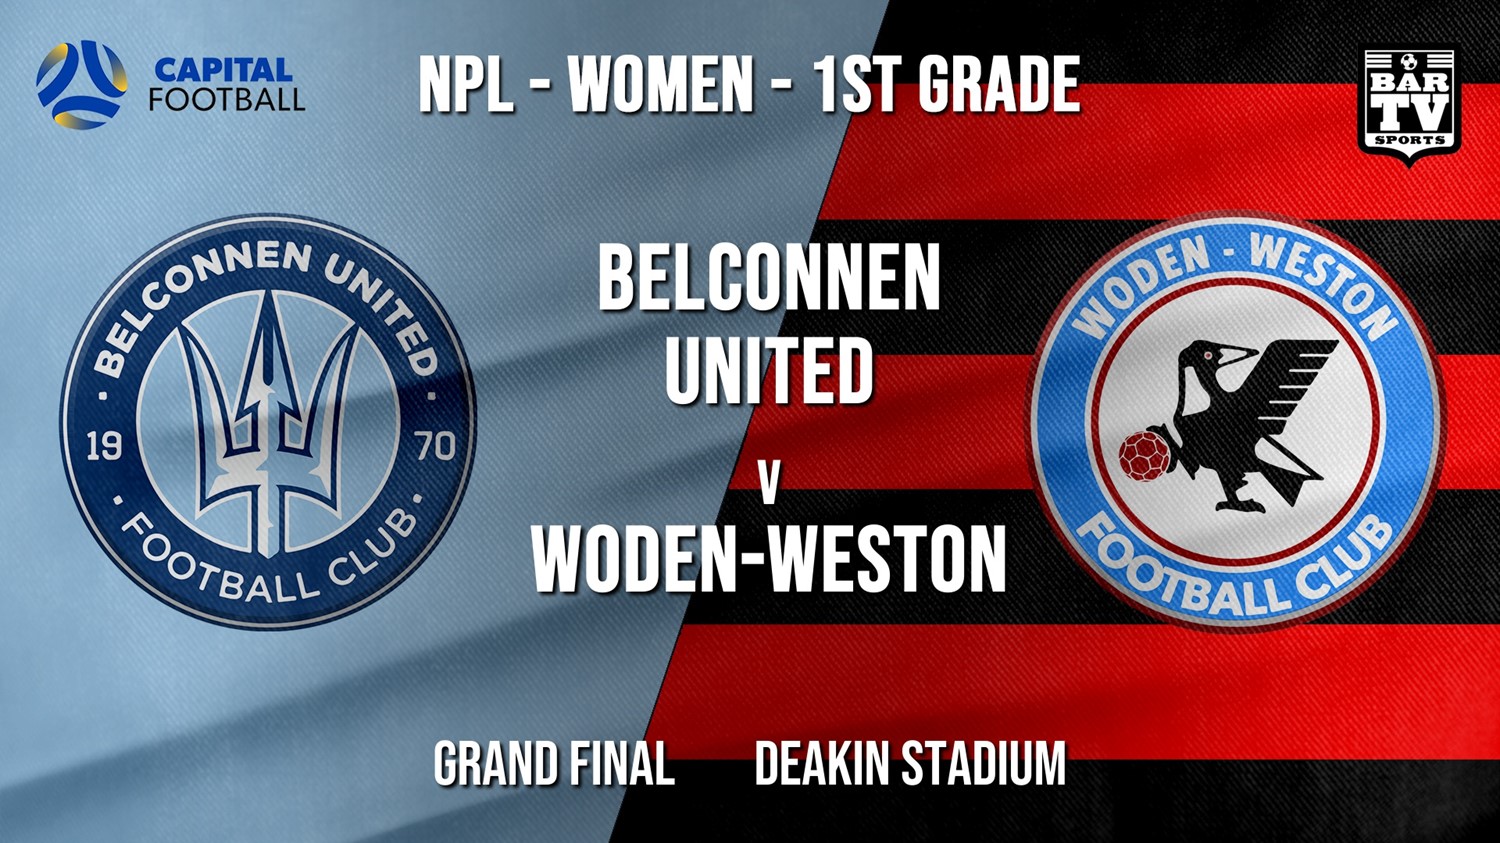 NPLW - Capital Grand Final - Belconnen United (women) v Woden-Weston FC (women) Slate Image